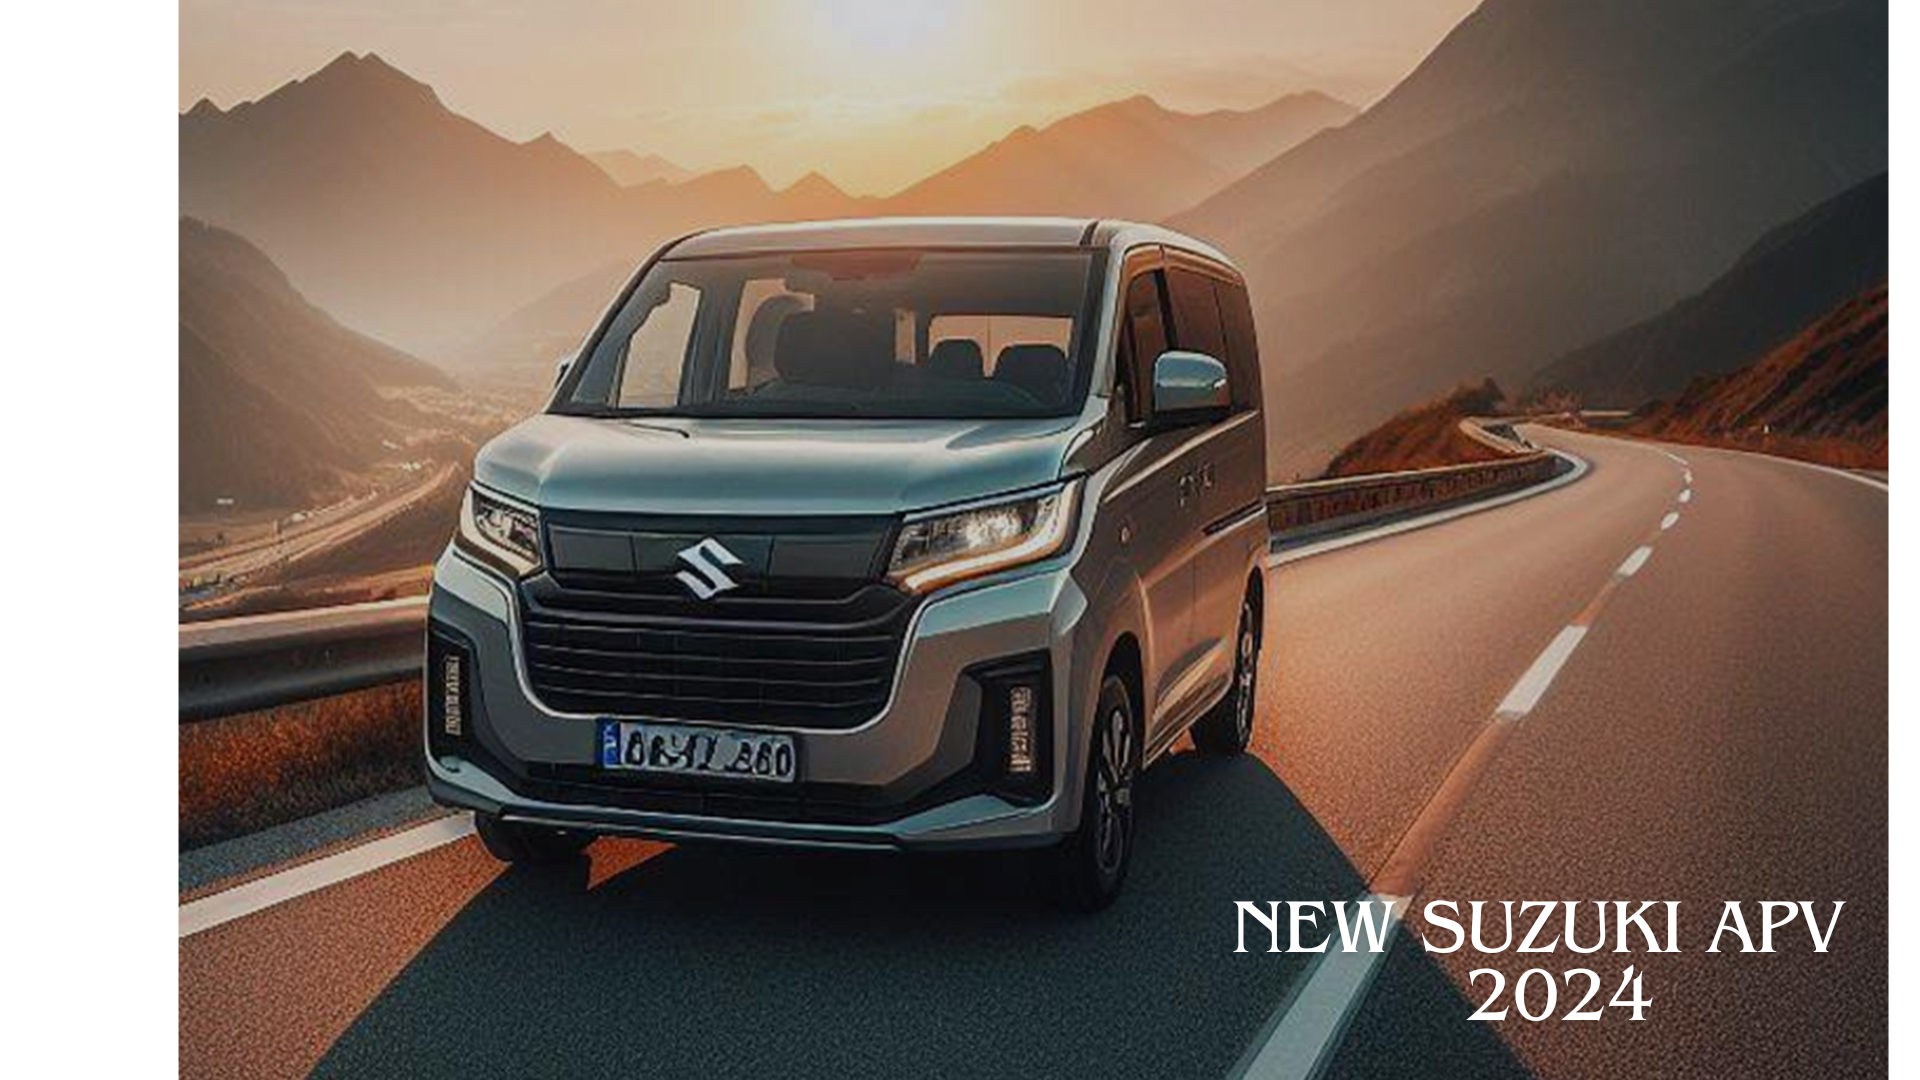 New Suzuki APV 2024 Mulai Diburu Para Pecinta Otomotif, SUV Murah dengan Kualitas Mewah